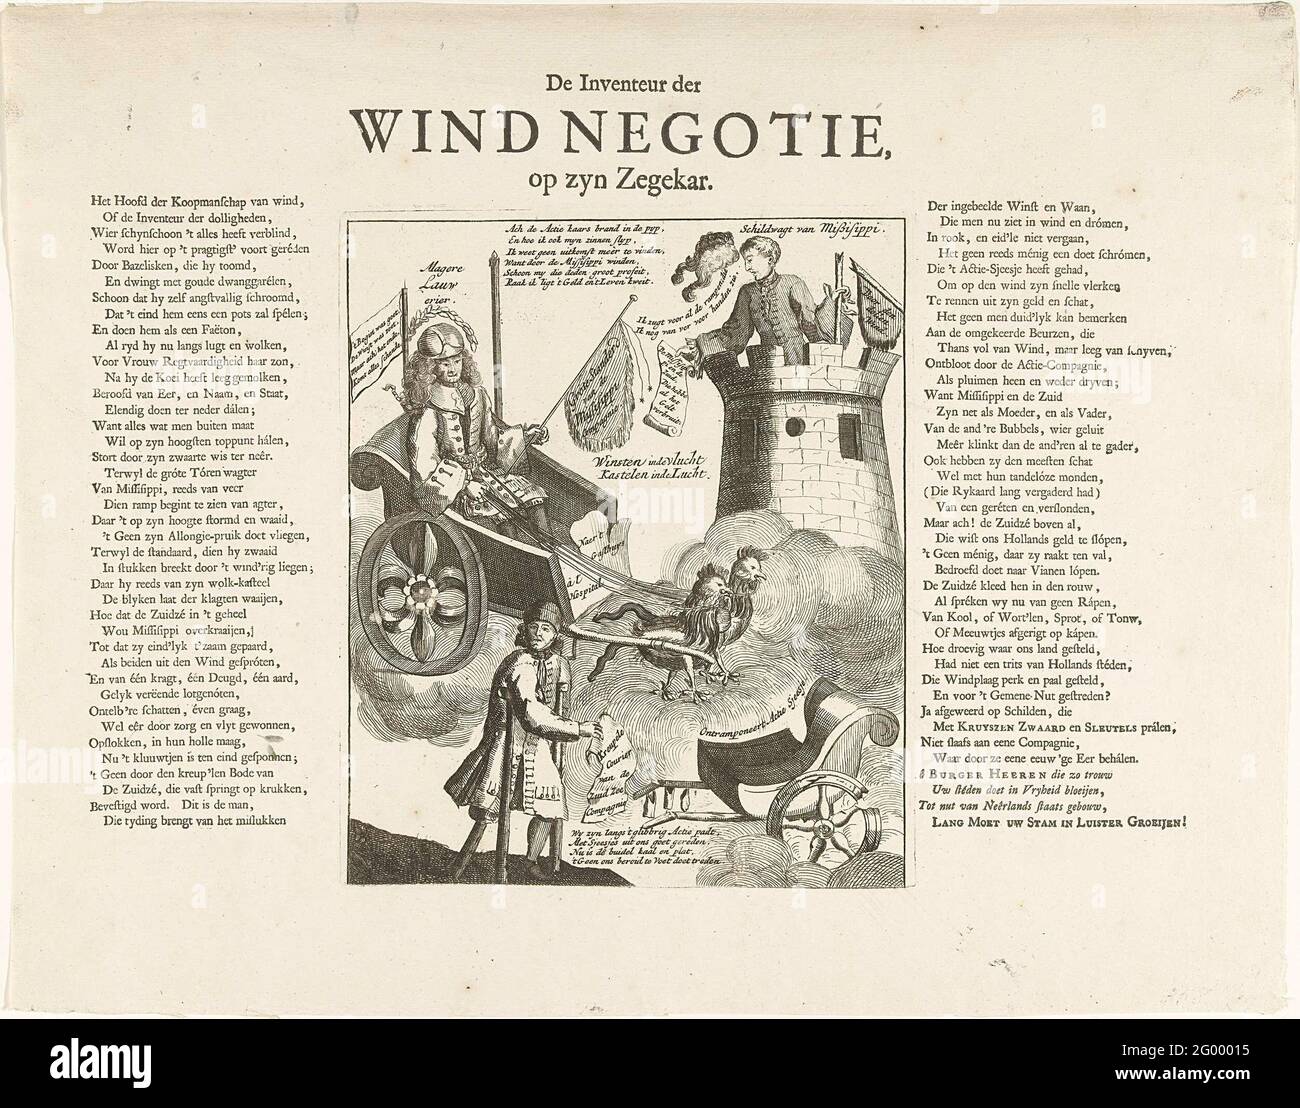 John Law, inventore del Wind Negotie, nel suo vittorioso, 1720; inventore  della negoziazione del vento, alla sua vittima; la grande scena di  stoltezza. John Law, inventore del Wind Negotie, nel suo vittimato